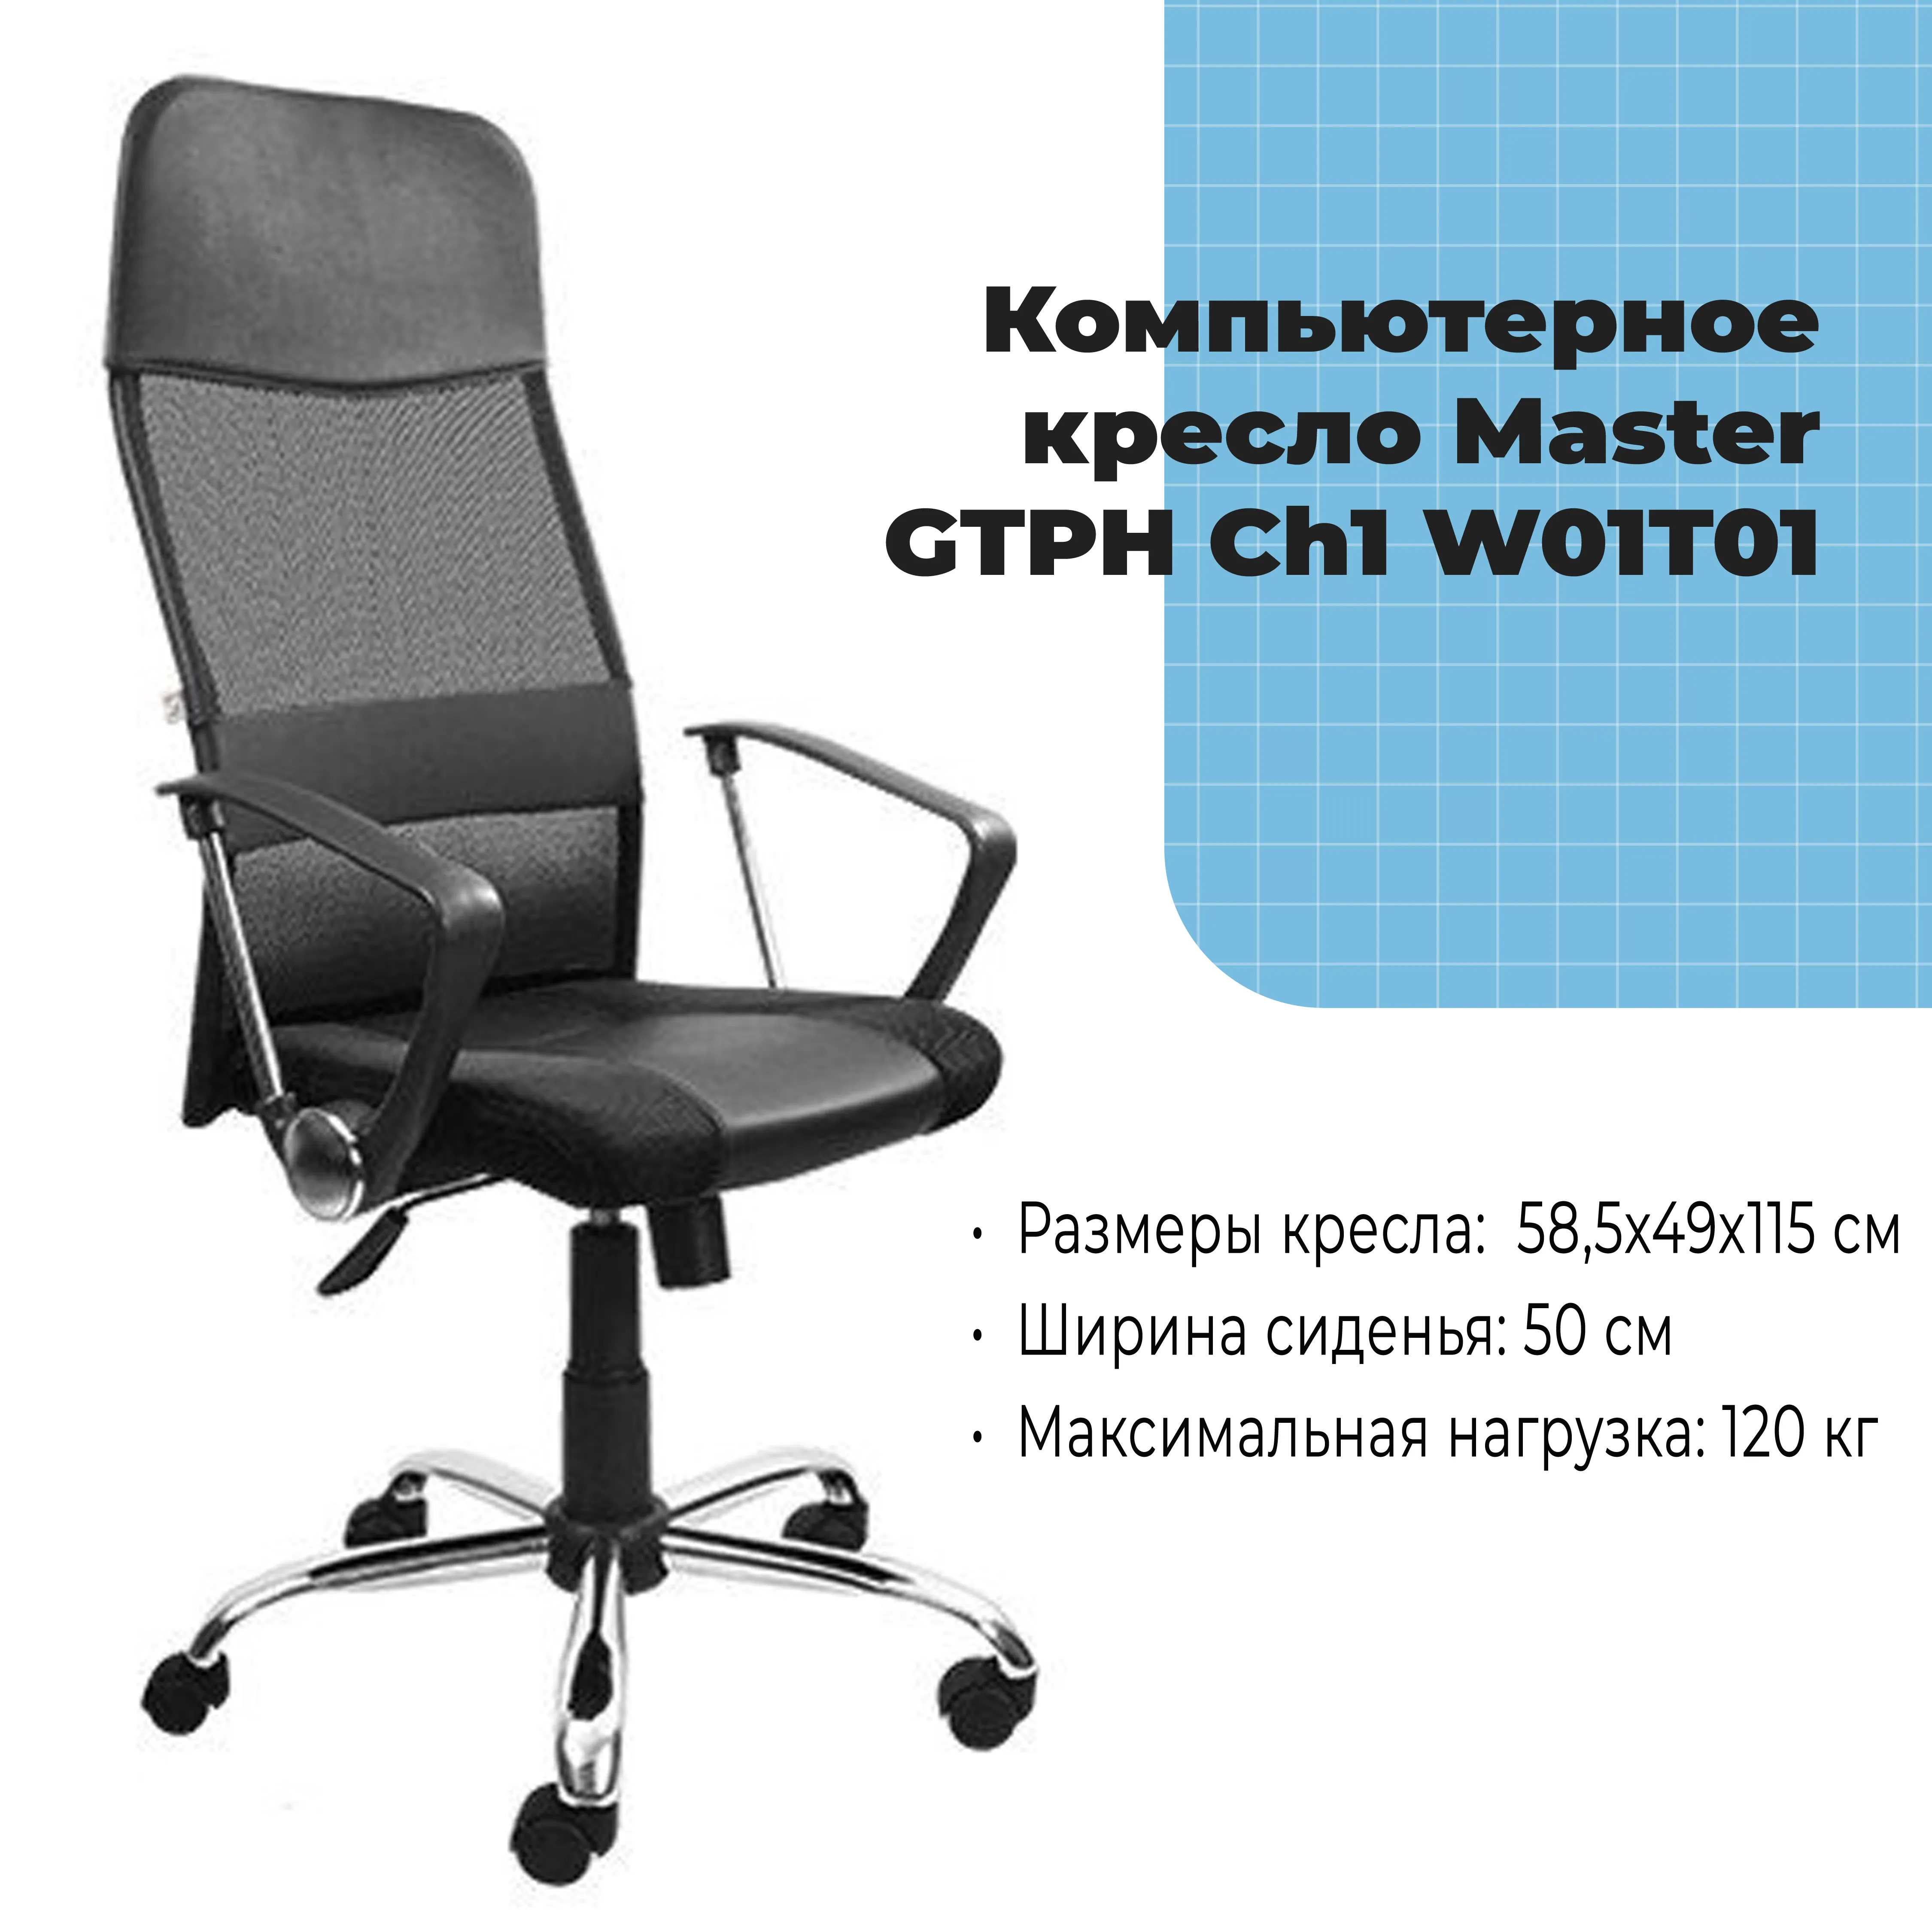 Компьютерное кресло Master GTPH Ch1 W01T01 черный